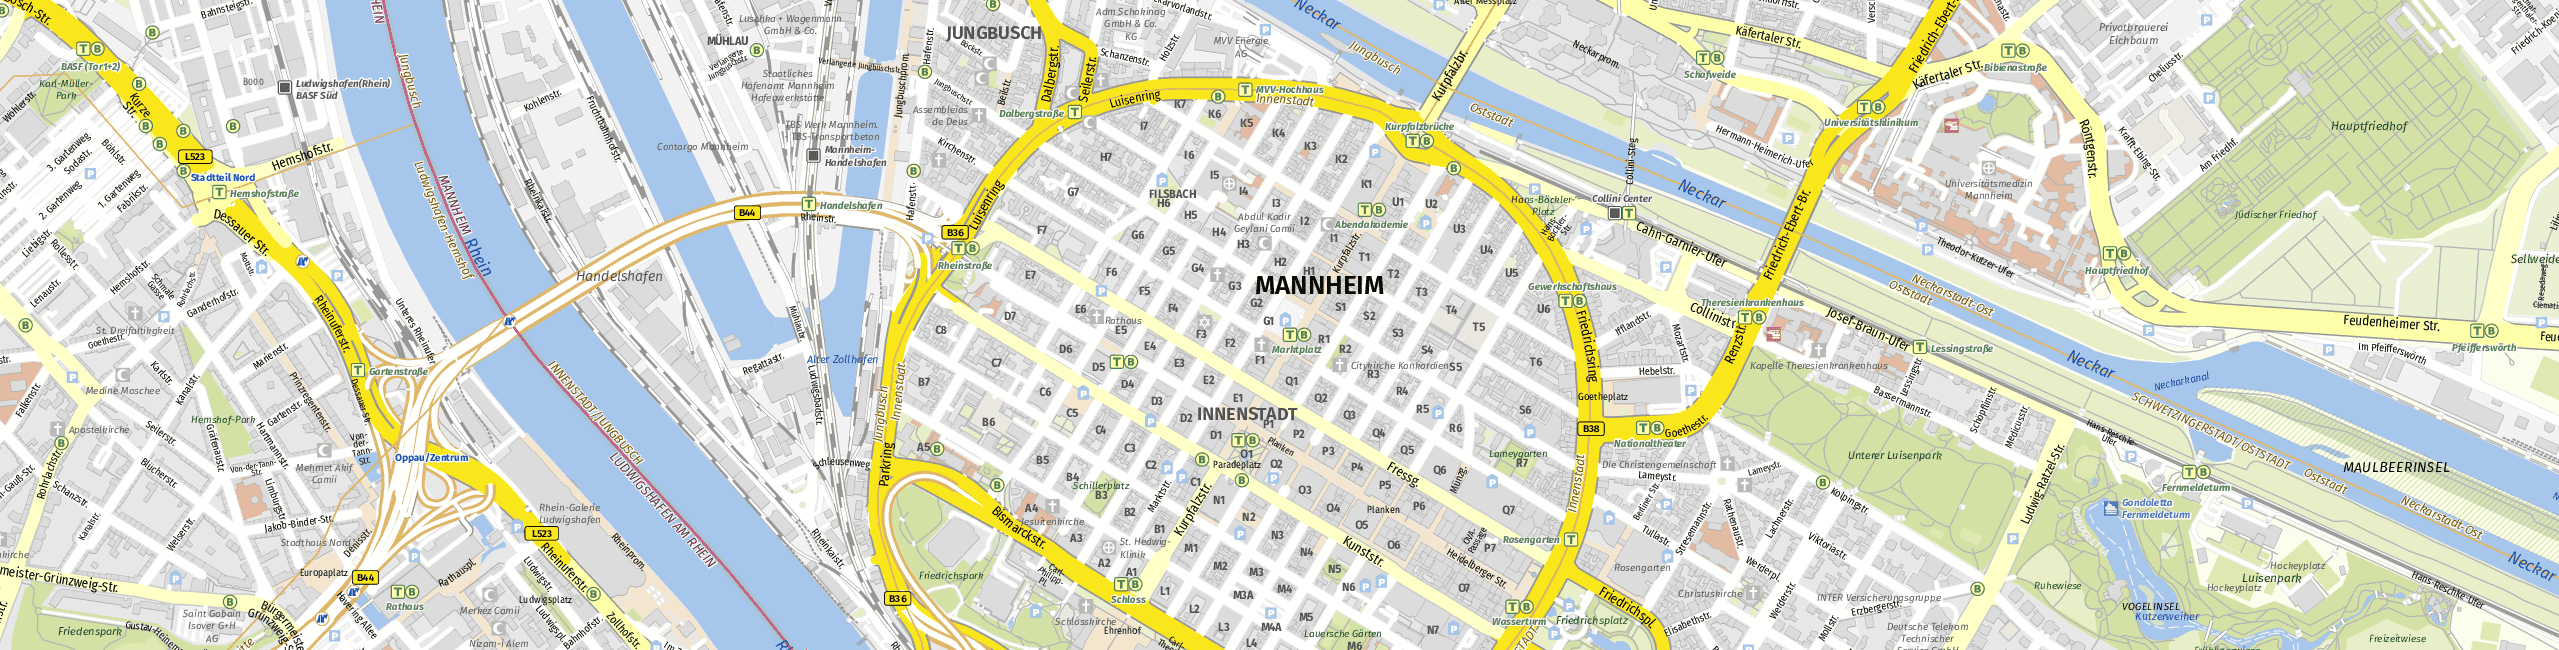 Stadtplan Mannheim zum Downloaden.